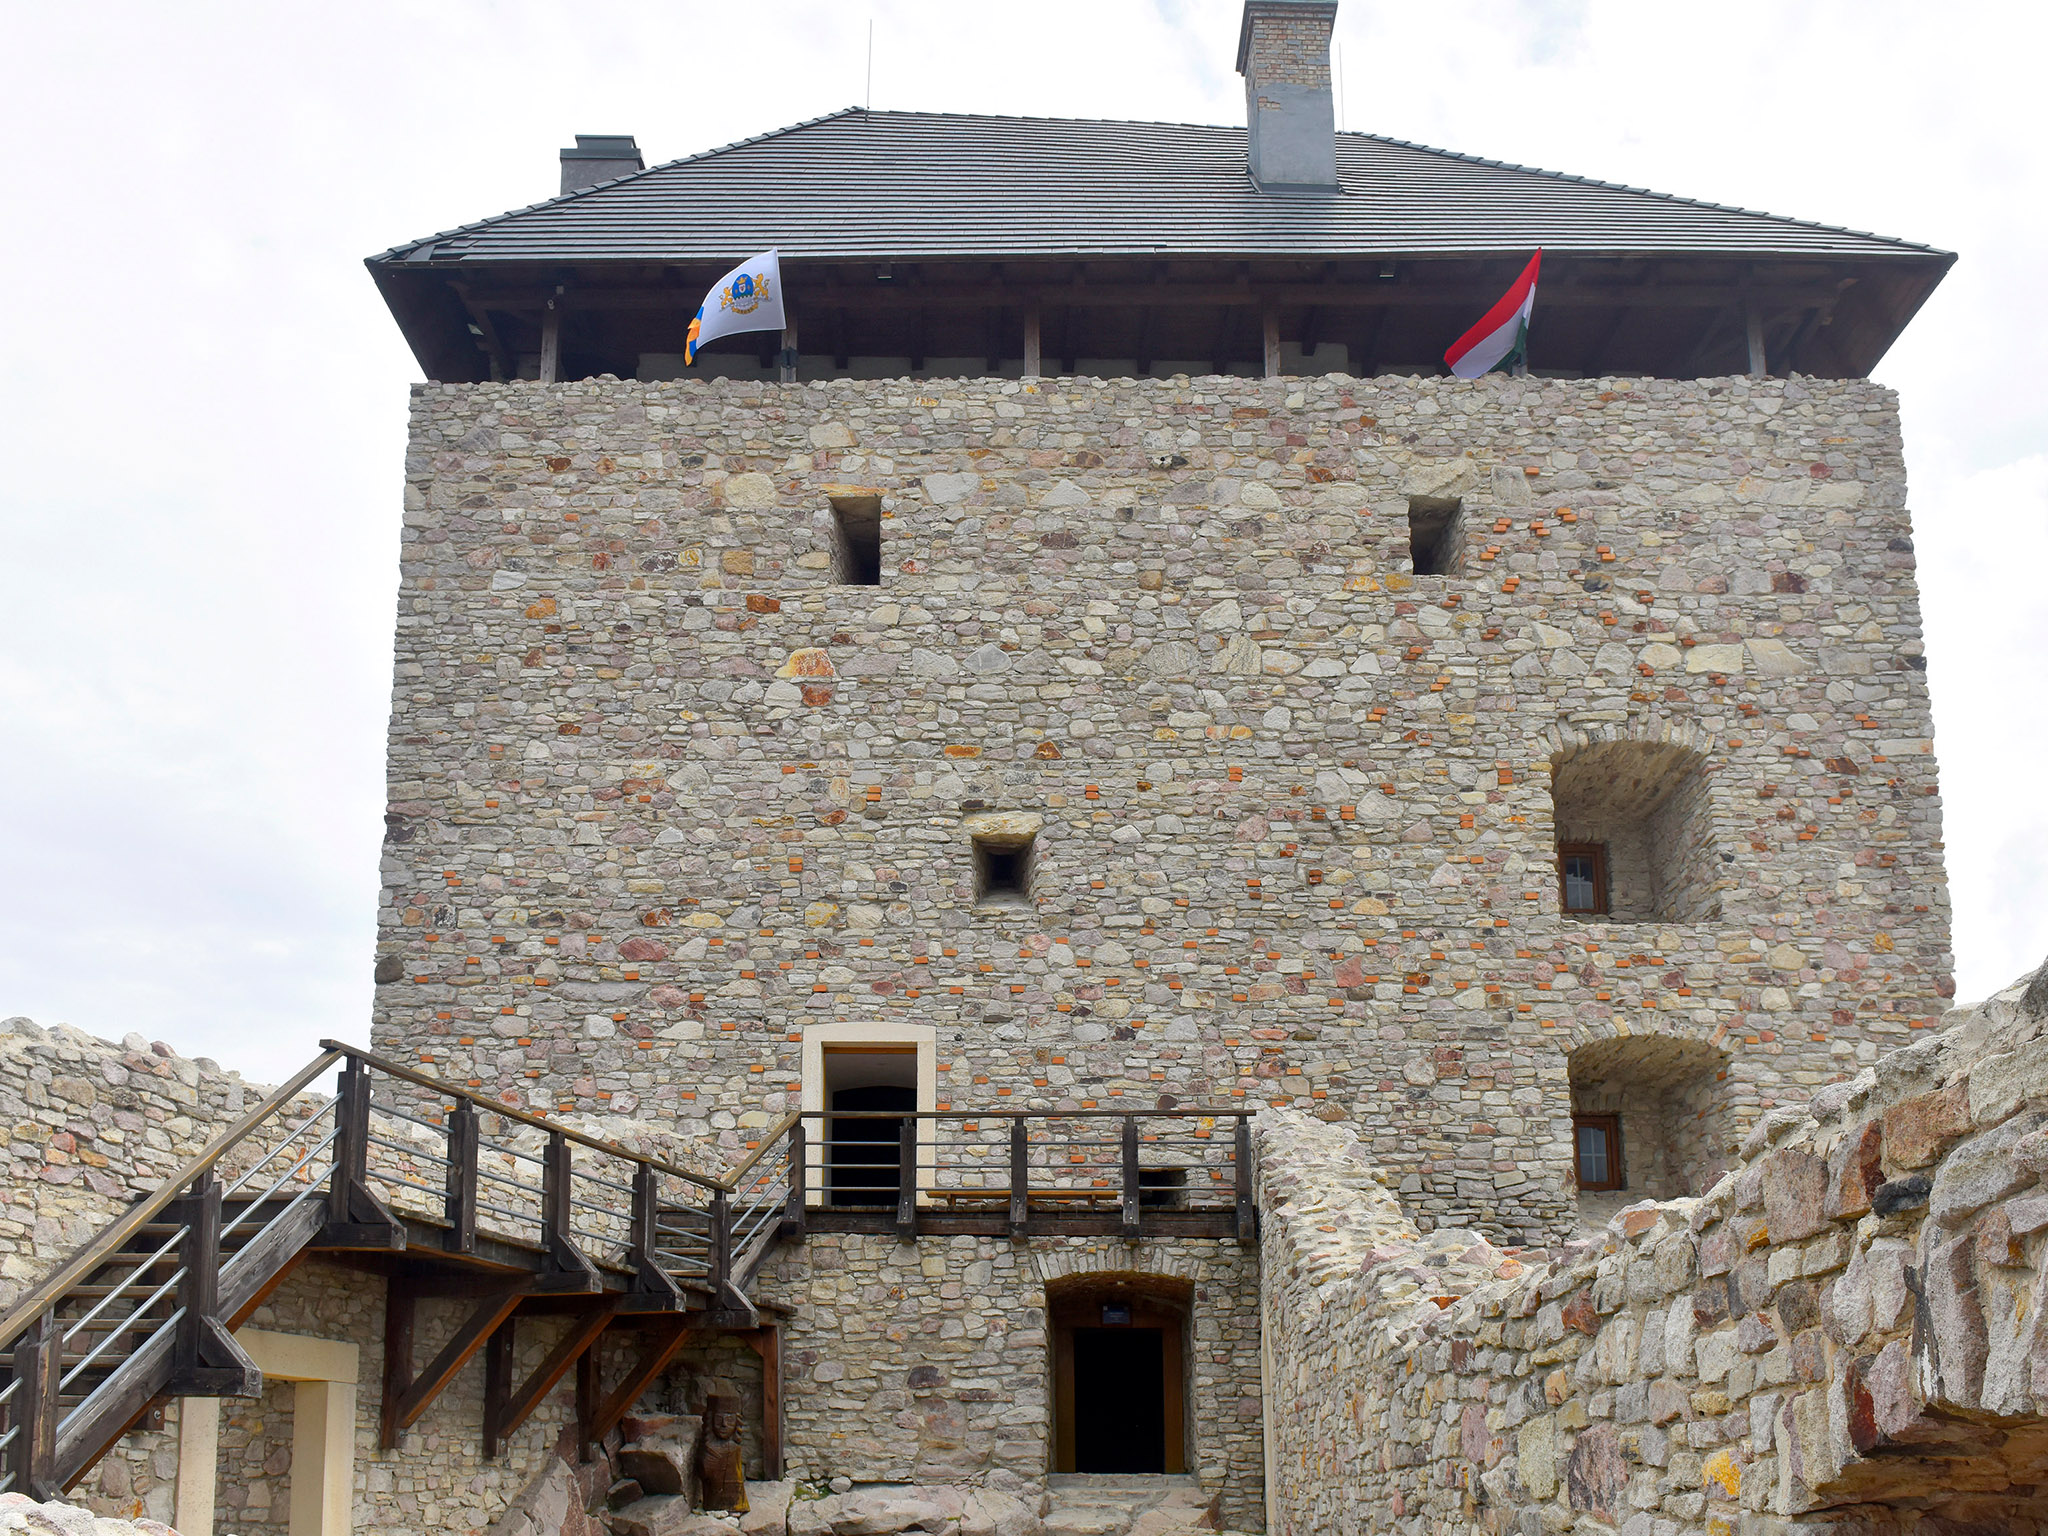 Regéci vár (Castle to castle)